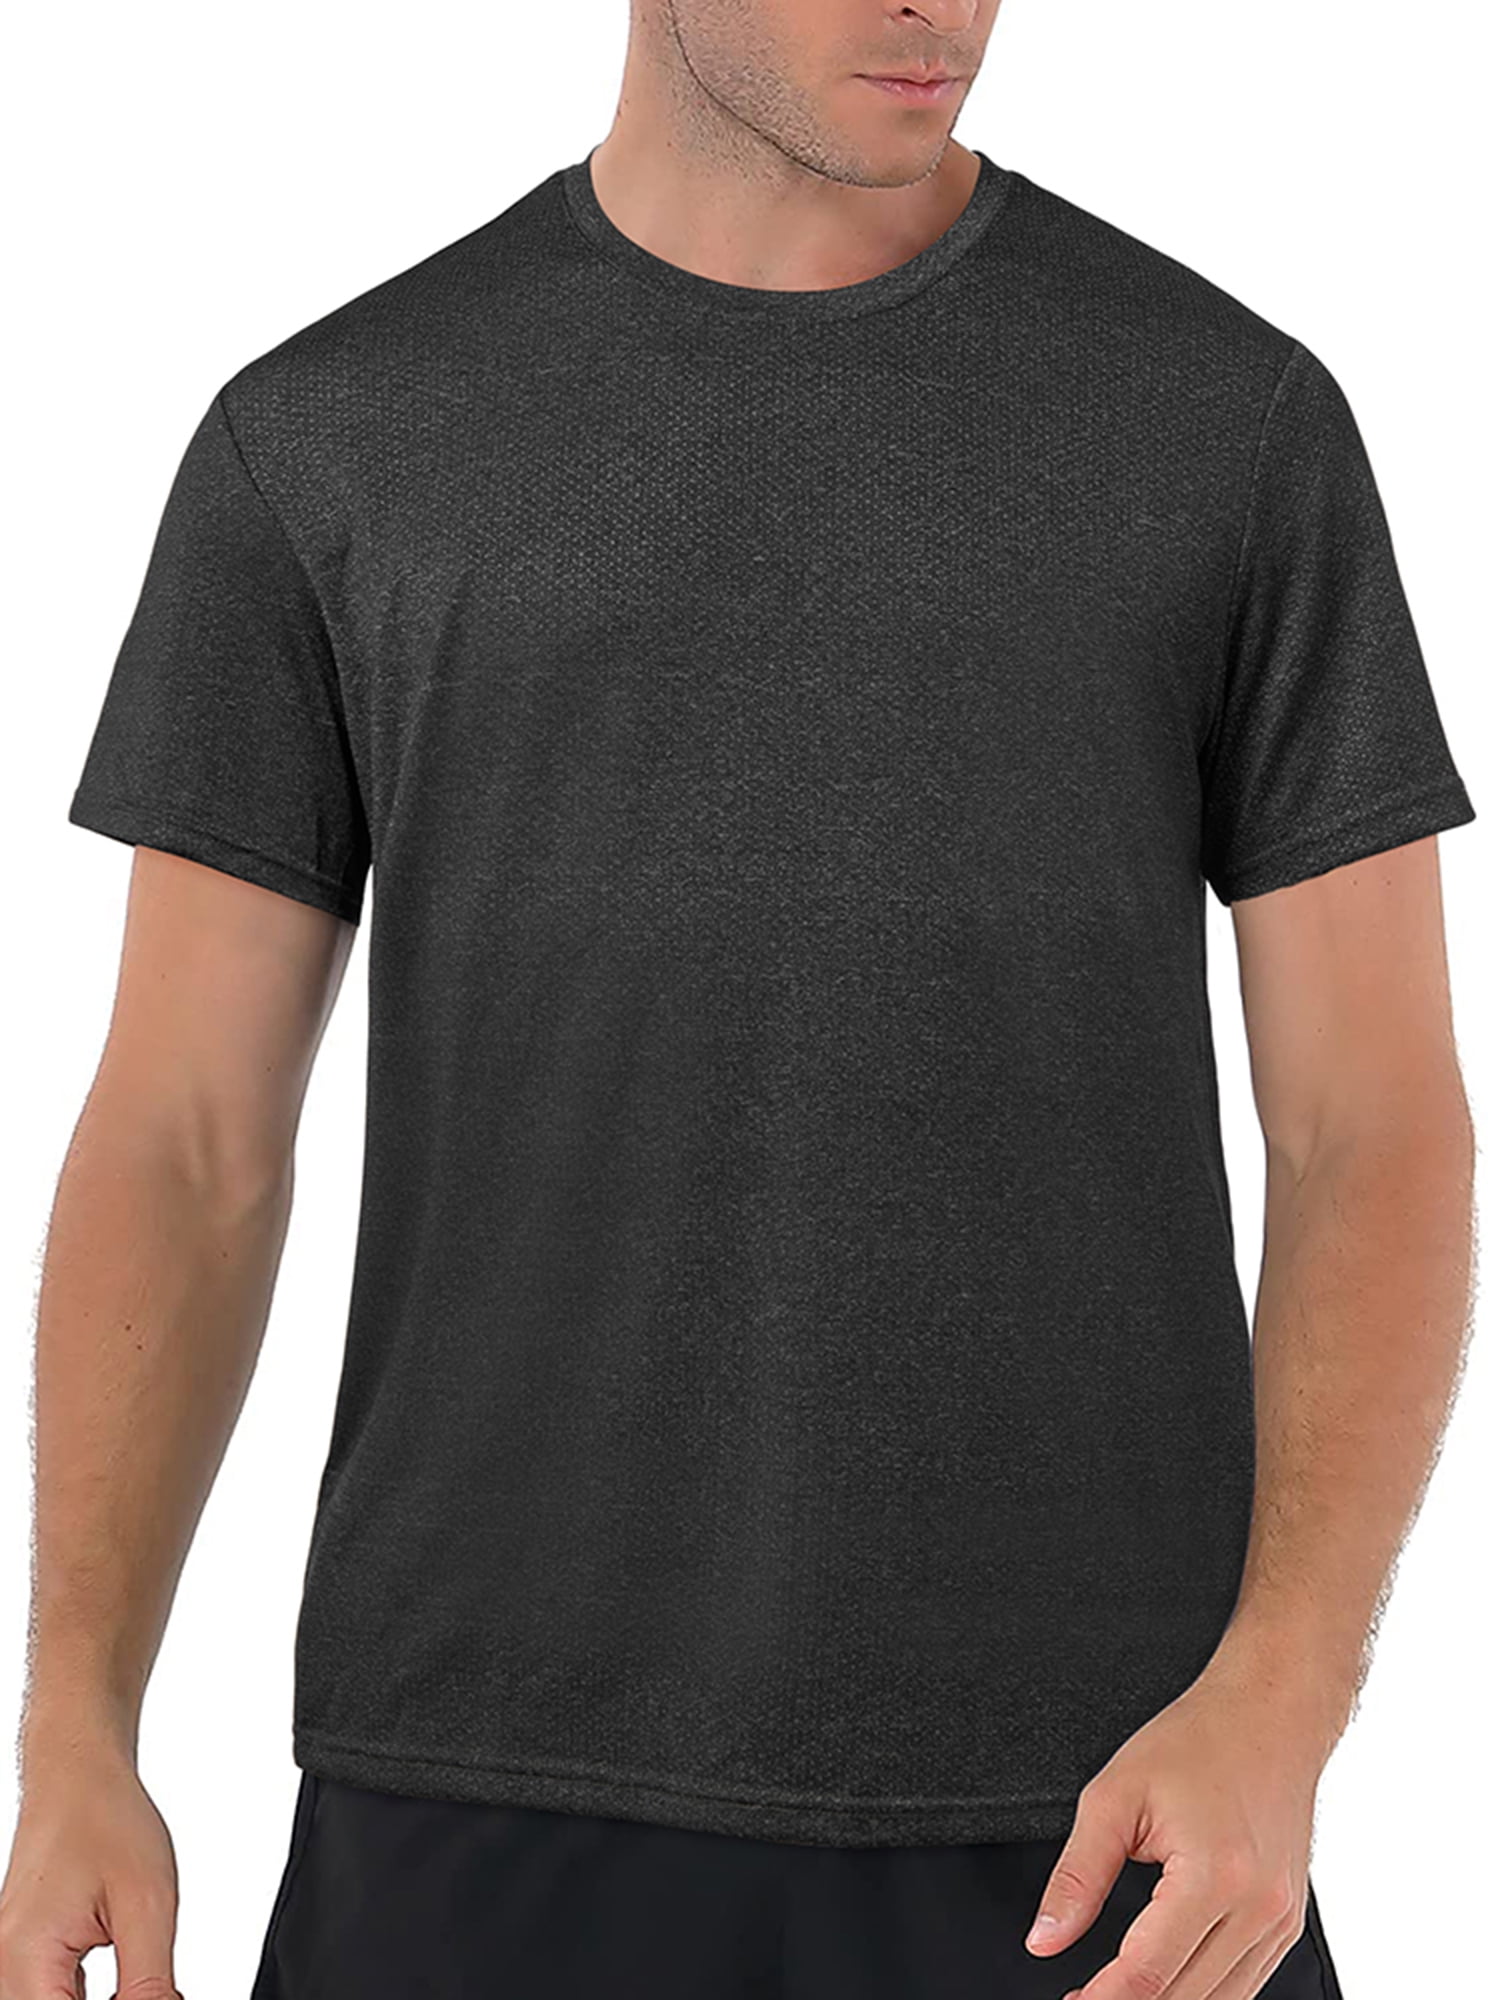 Summer Walker T shirt Black Tee Men Black T Shirt S-3XL Details about   New Rare